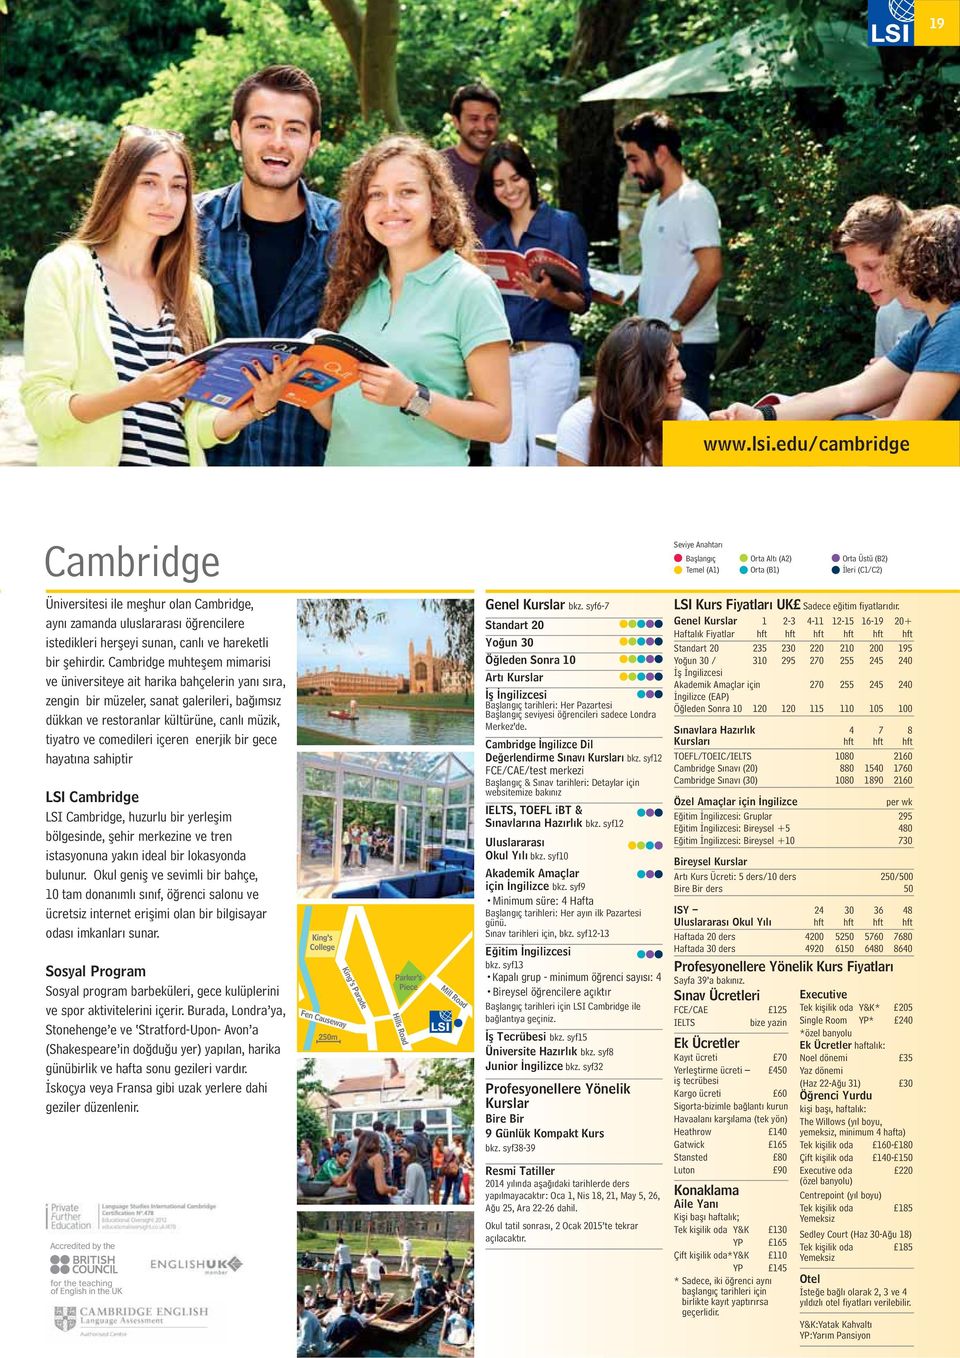 enerjik bir gece hayat na sahiptir LSI Cambridge LSI Cambridge, huzurlu bir yerle im bölgesinde, ehir merkezine ve tren istasyonuna yak n ideal bir lokasyonda bulunur.